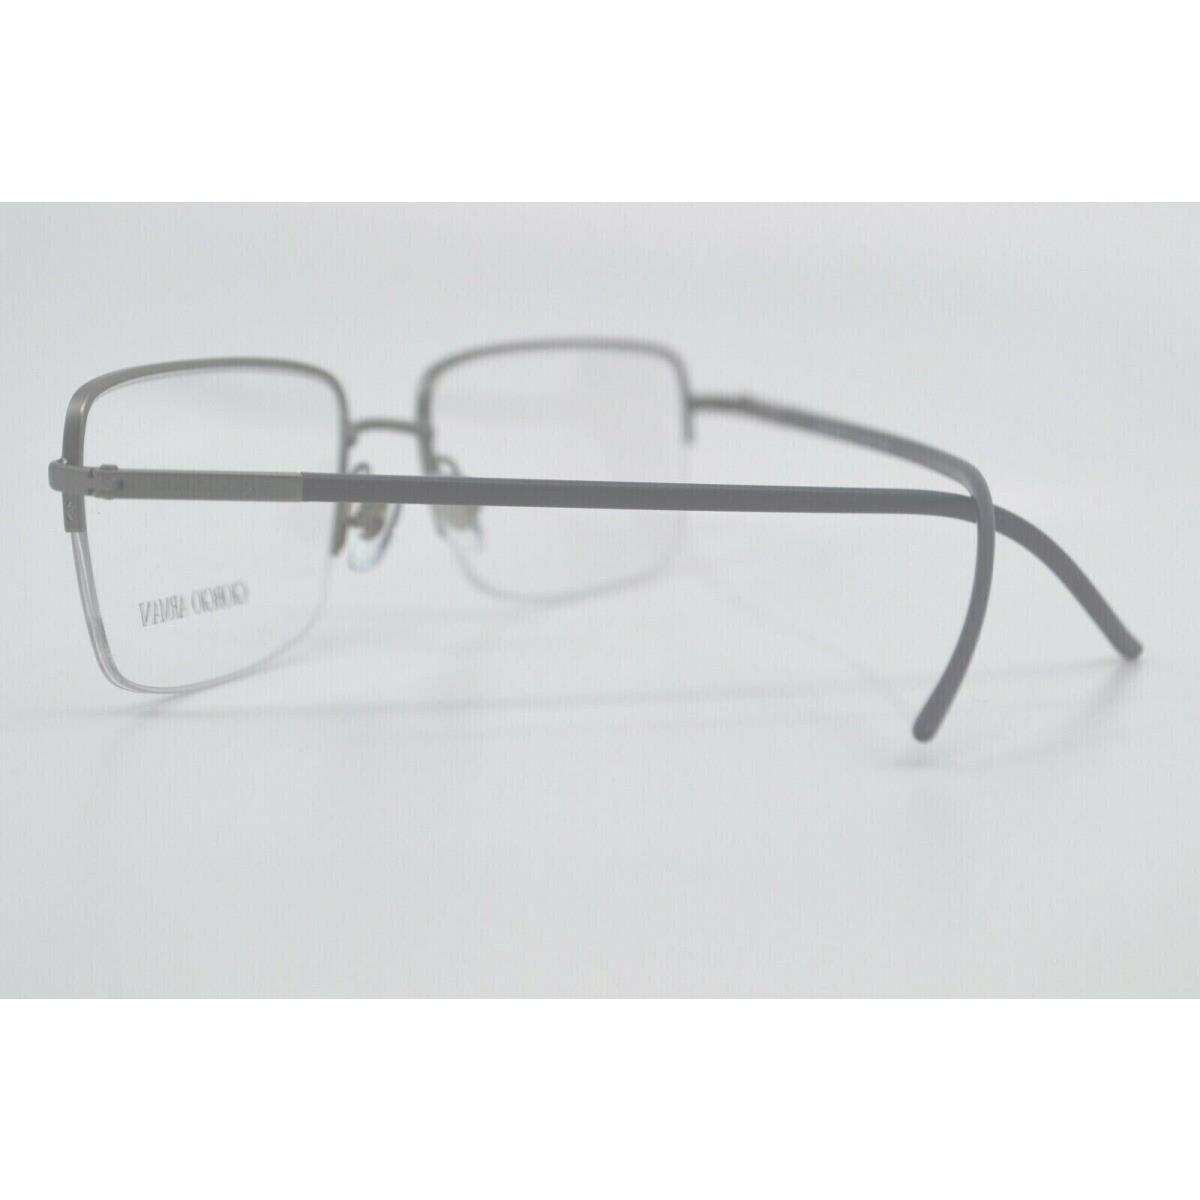 Giorgio Armani eyeglasses  - Gun Metal Frame 1